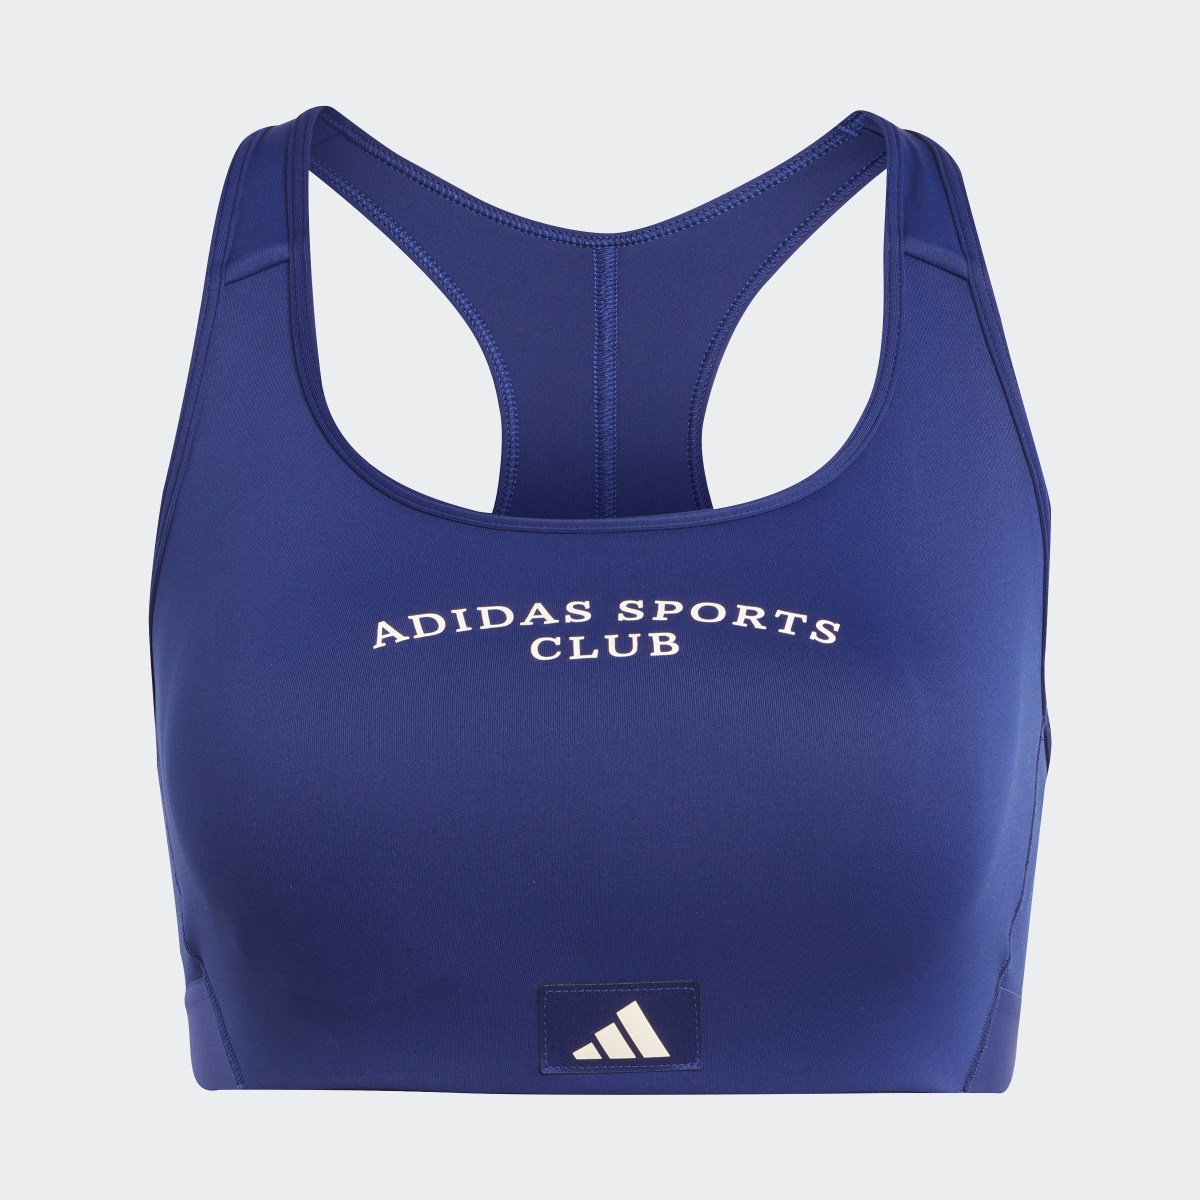 Adidas Sports Club Medium-Support Bra. 5